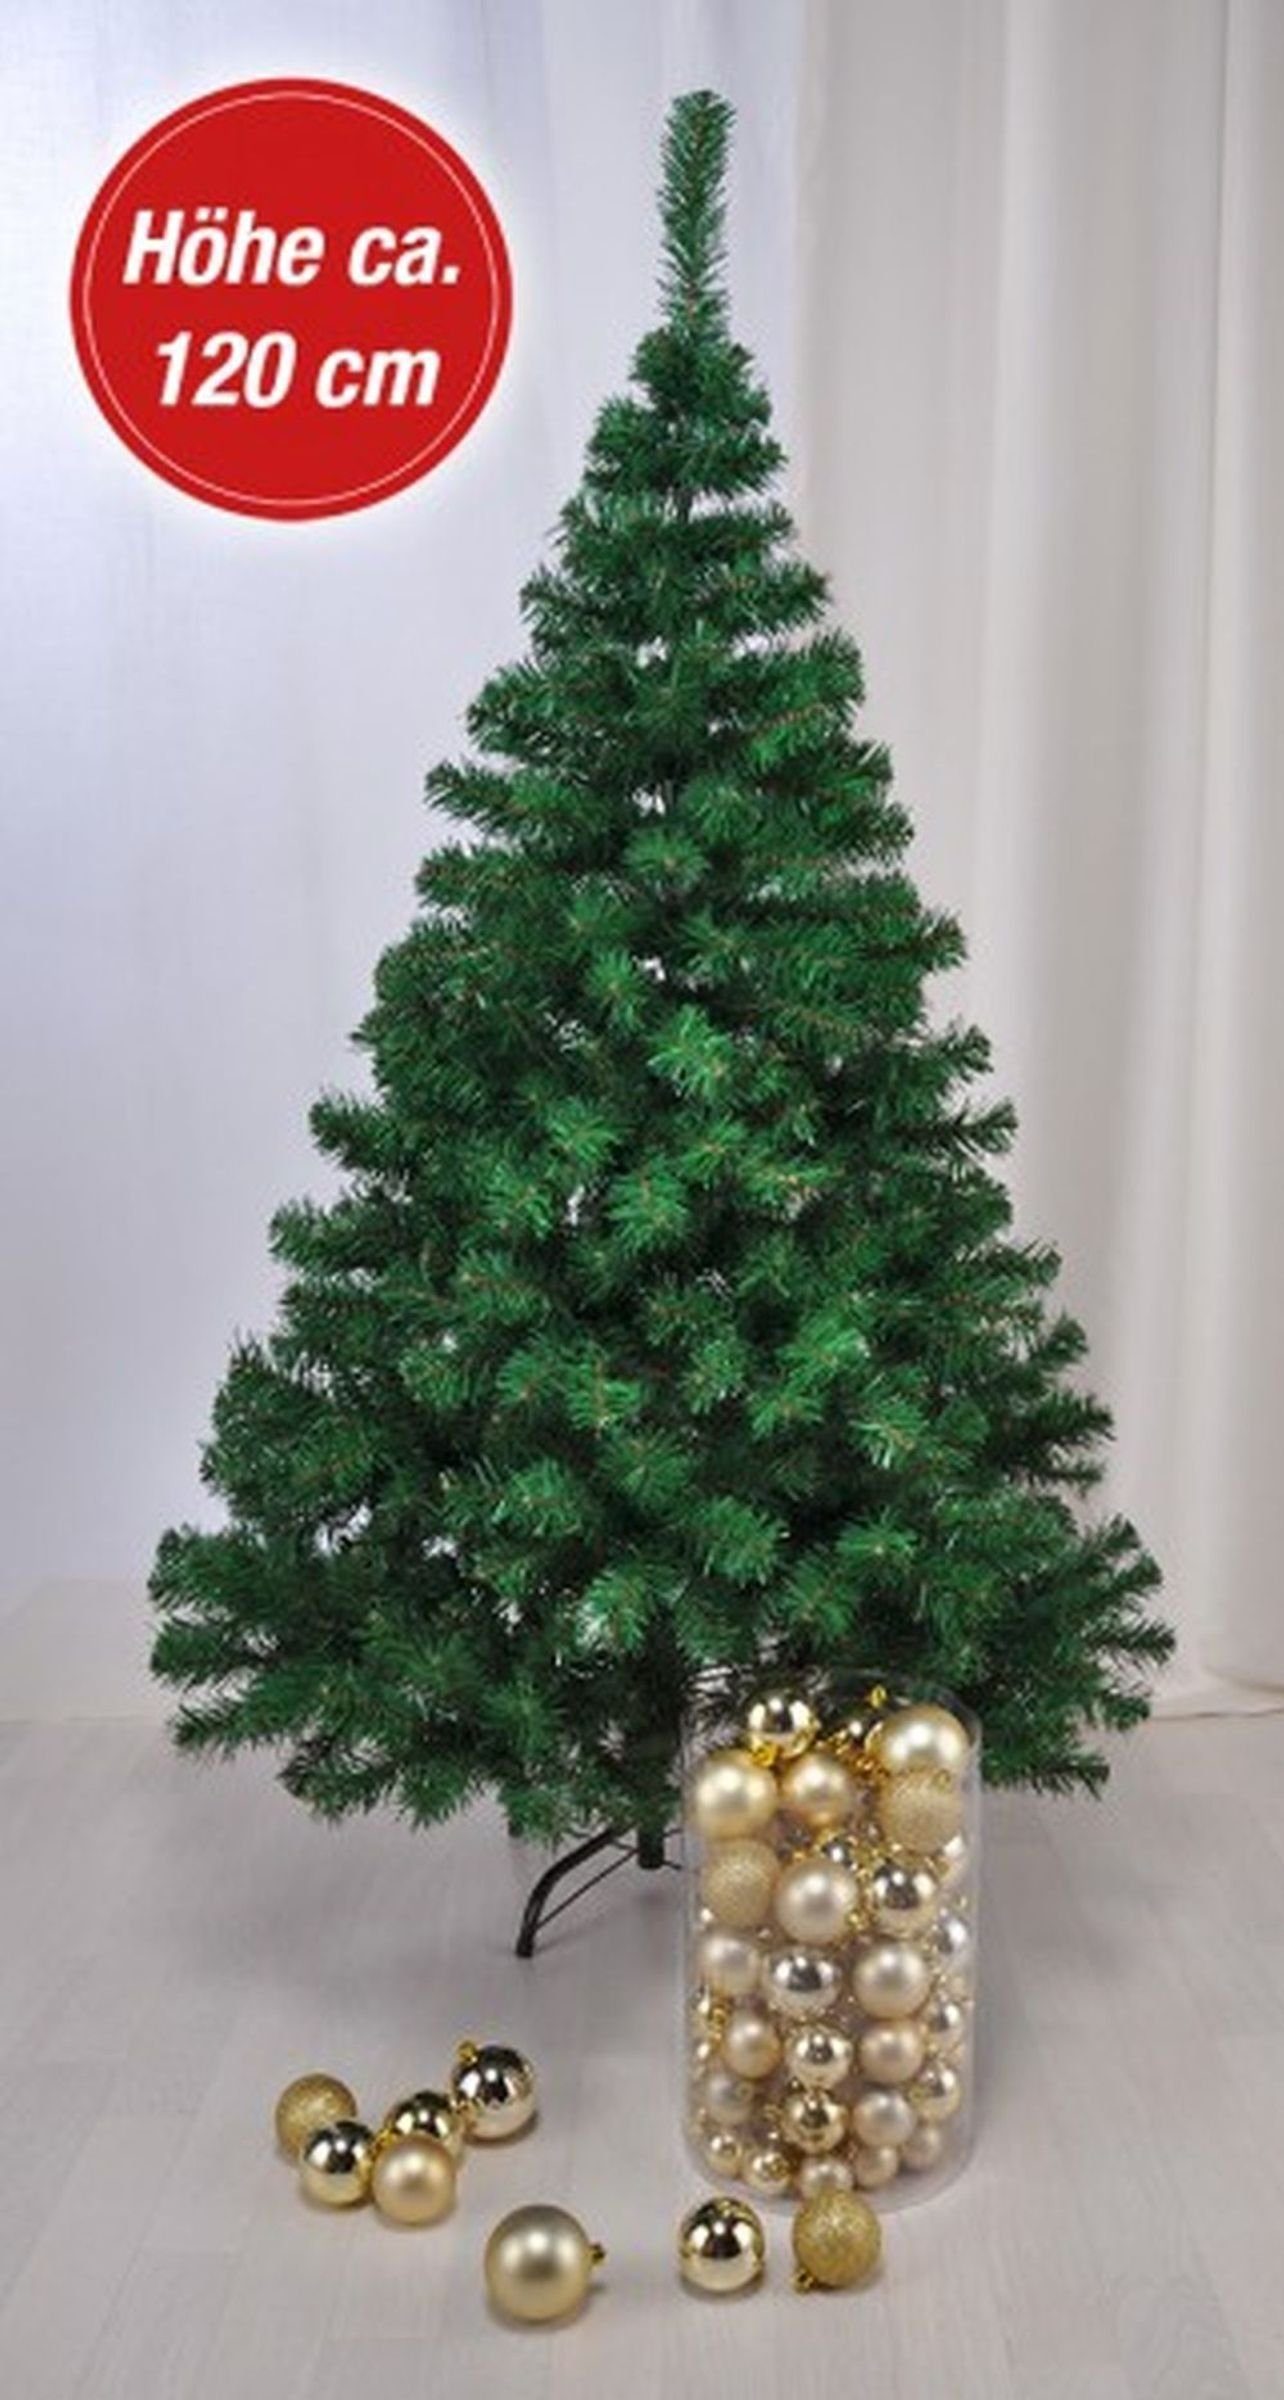 Kunststoff Weihnachtsbaum Tannenbaum Gravidus 1,2m Künstlicher Künstlicher Weihnachtsbaum